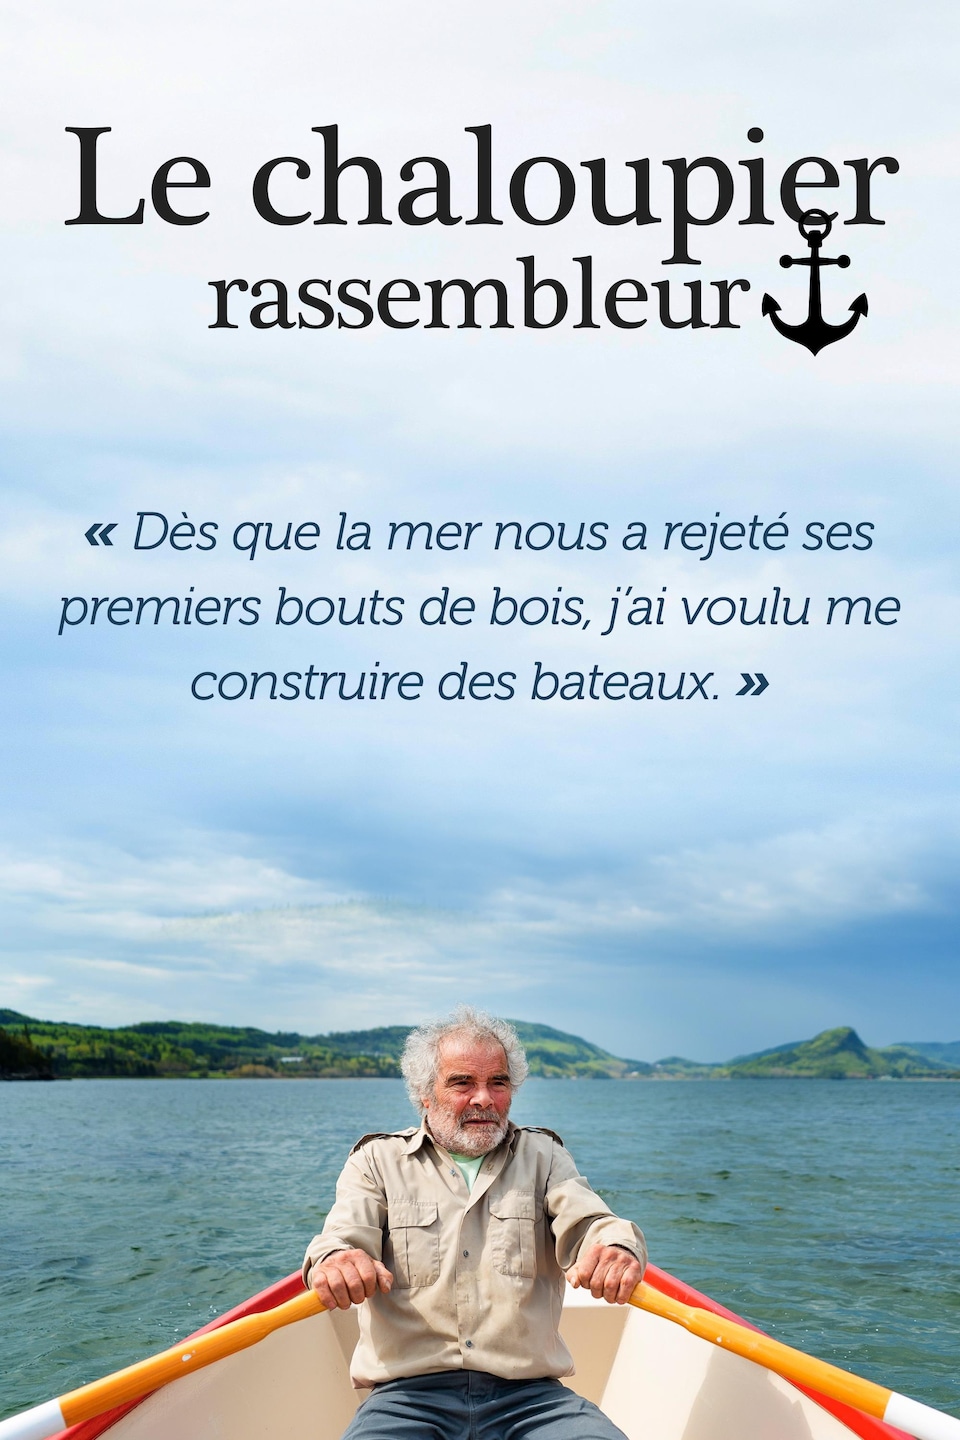 Daniel St-Pierre, naviguant dans une chaloupe à rames: « Dès que la mer nous a rejeté ses premiers bouts de bois, j'ai voulu me construire des bateaux.»